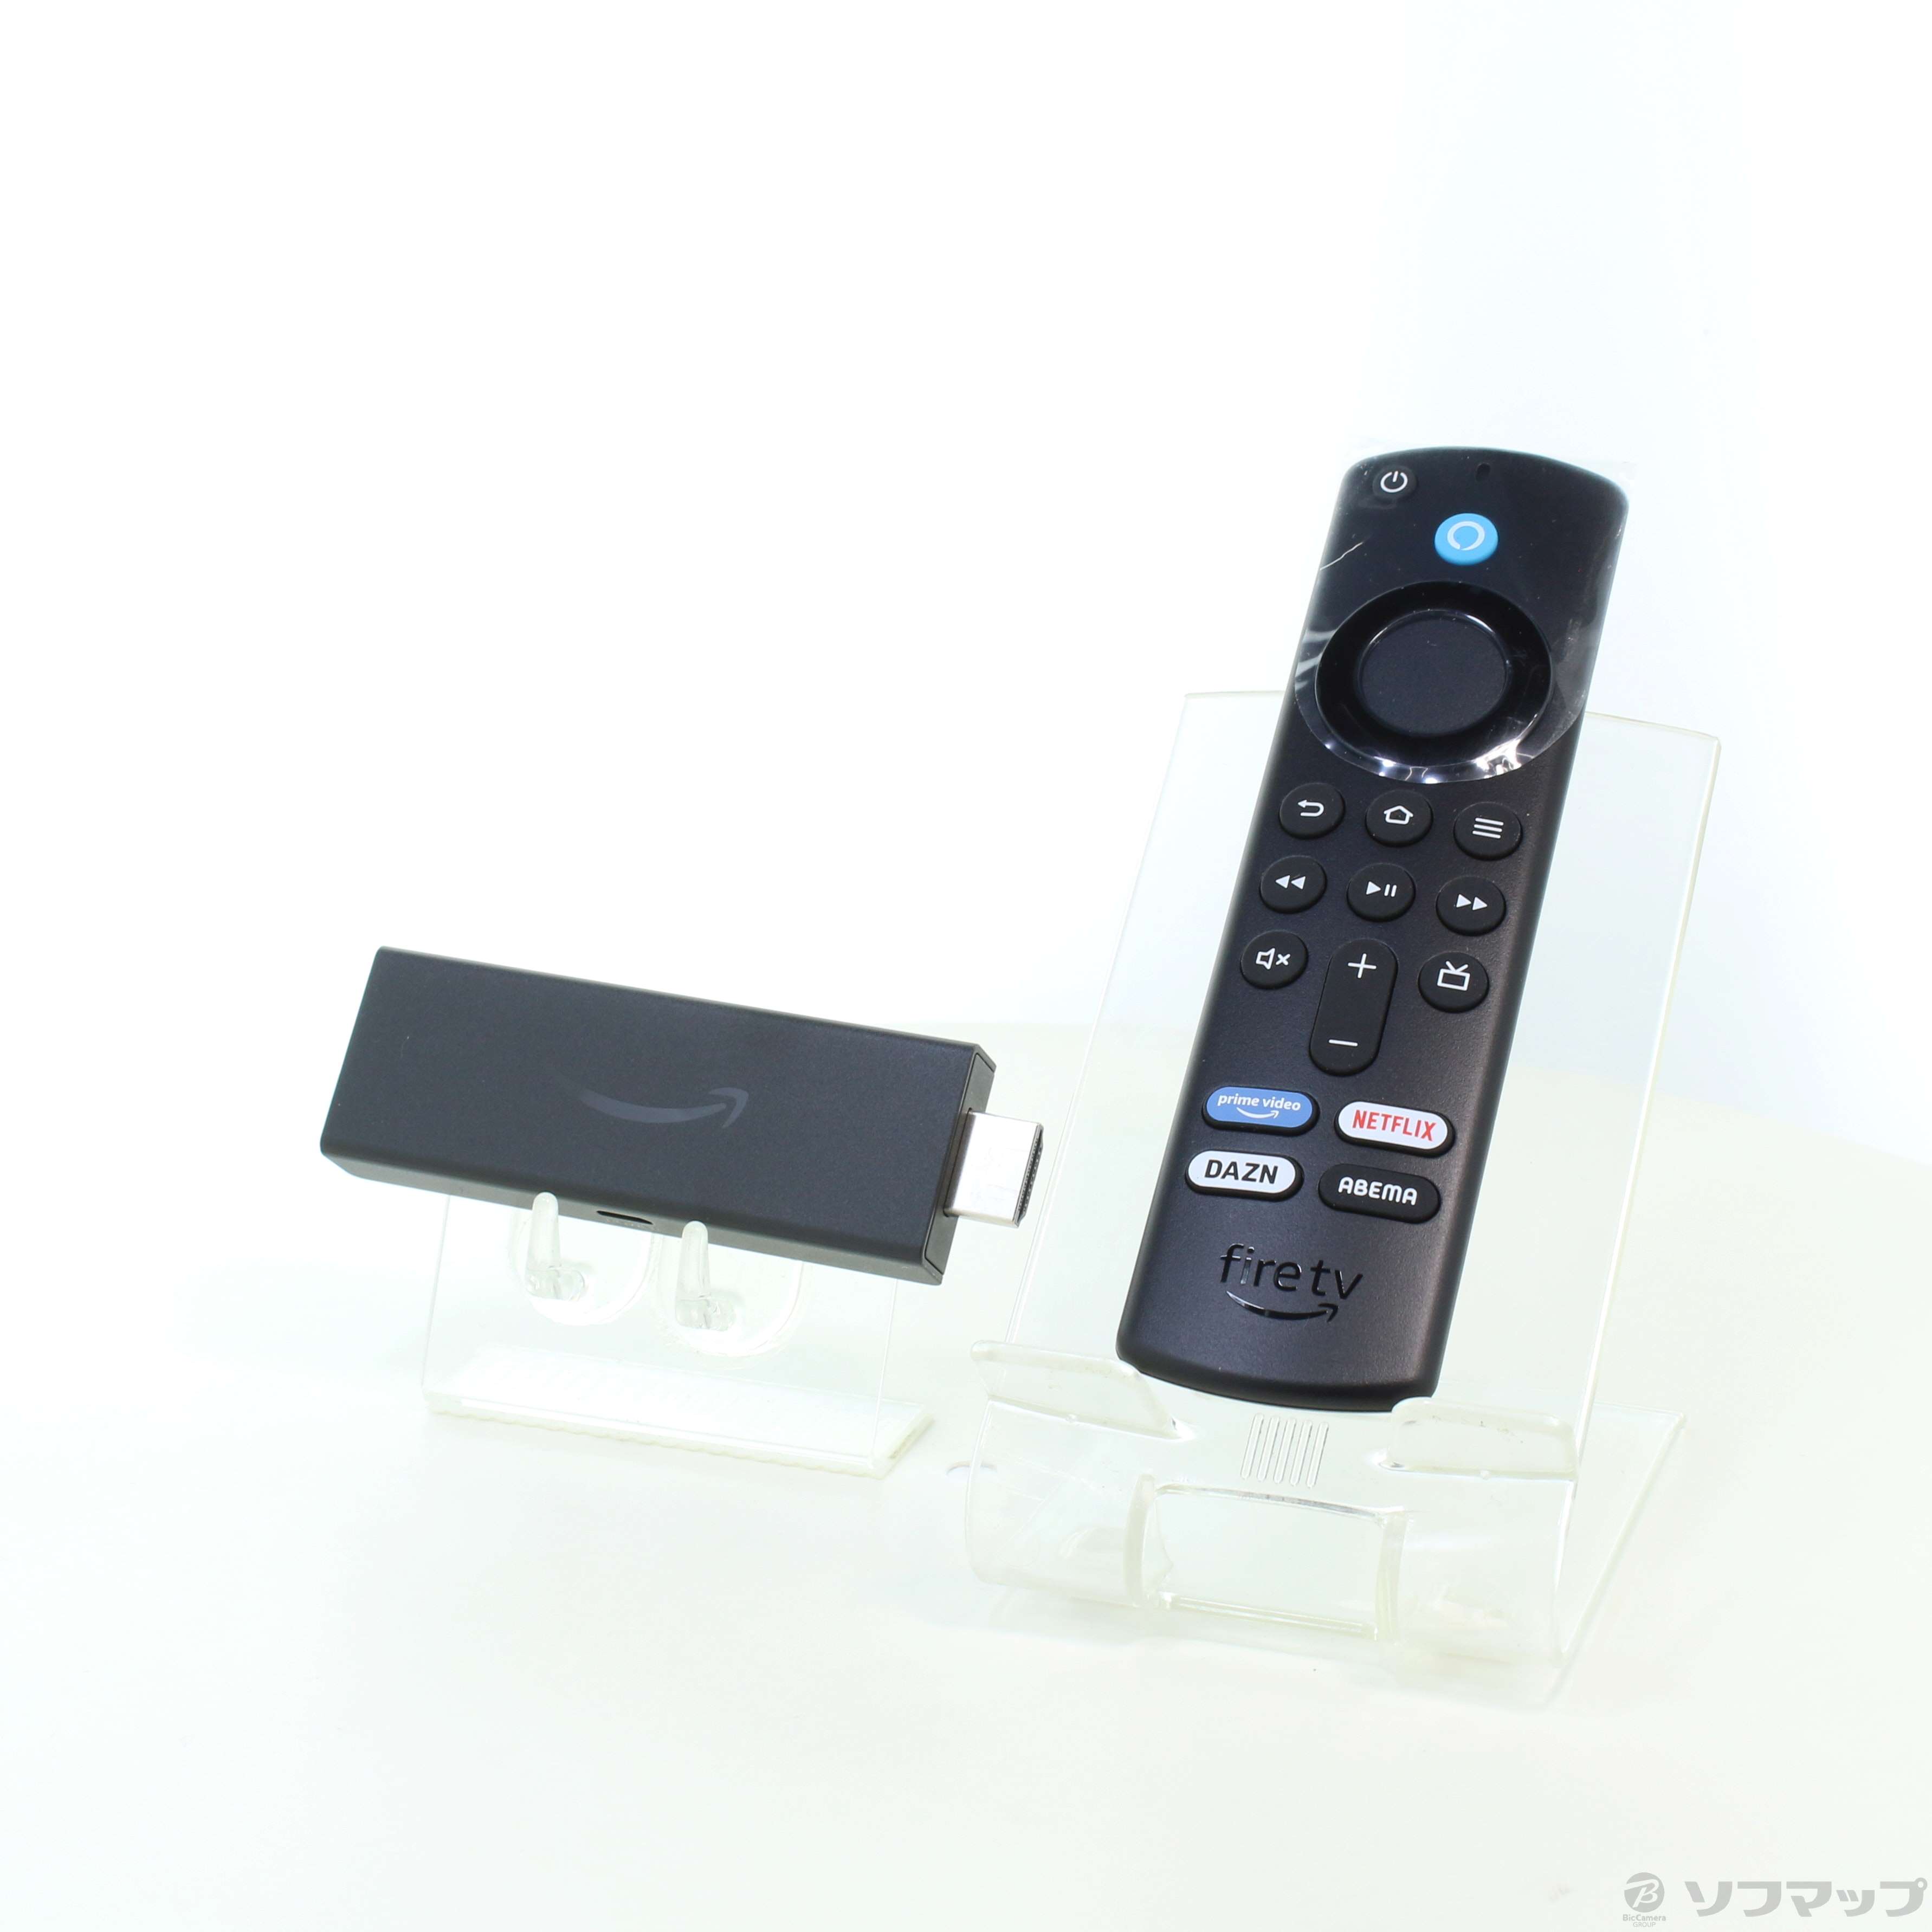 【中古】Fire TV Stick Alexa対応音声認識リモコン(第3世代)付属